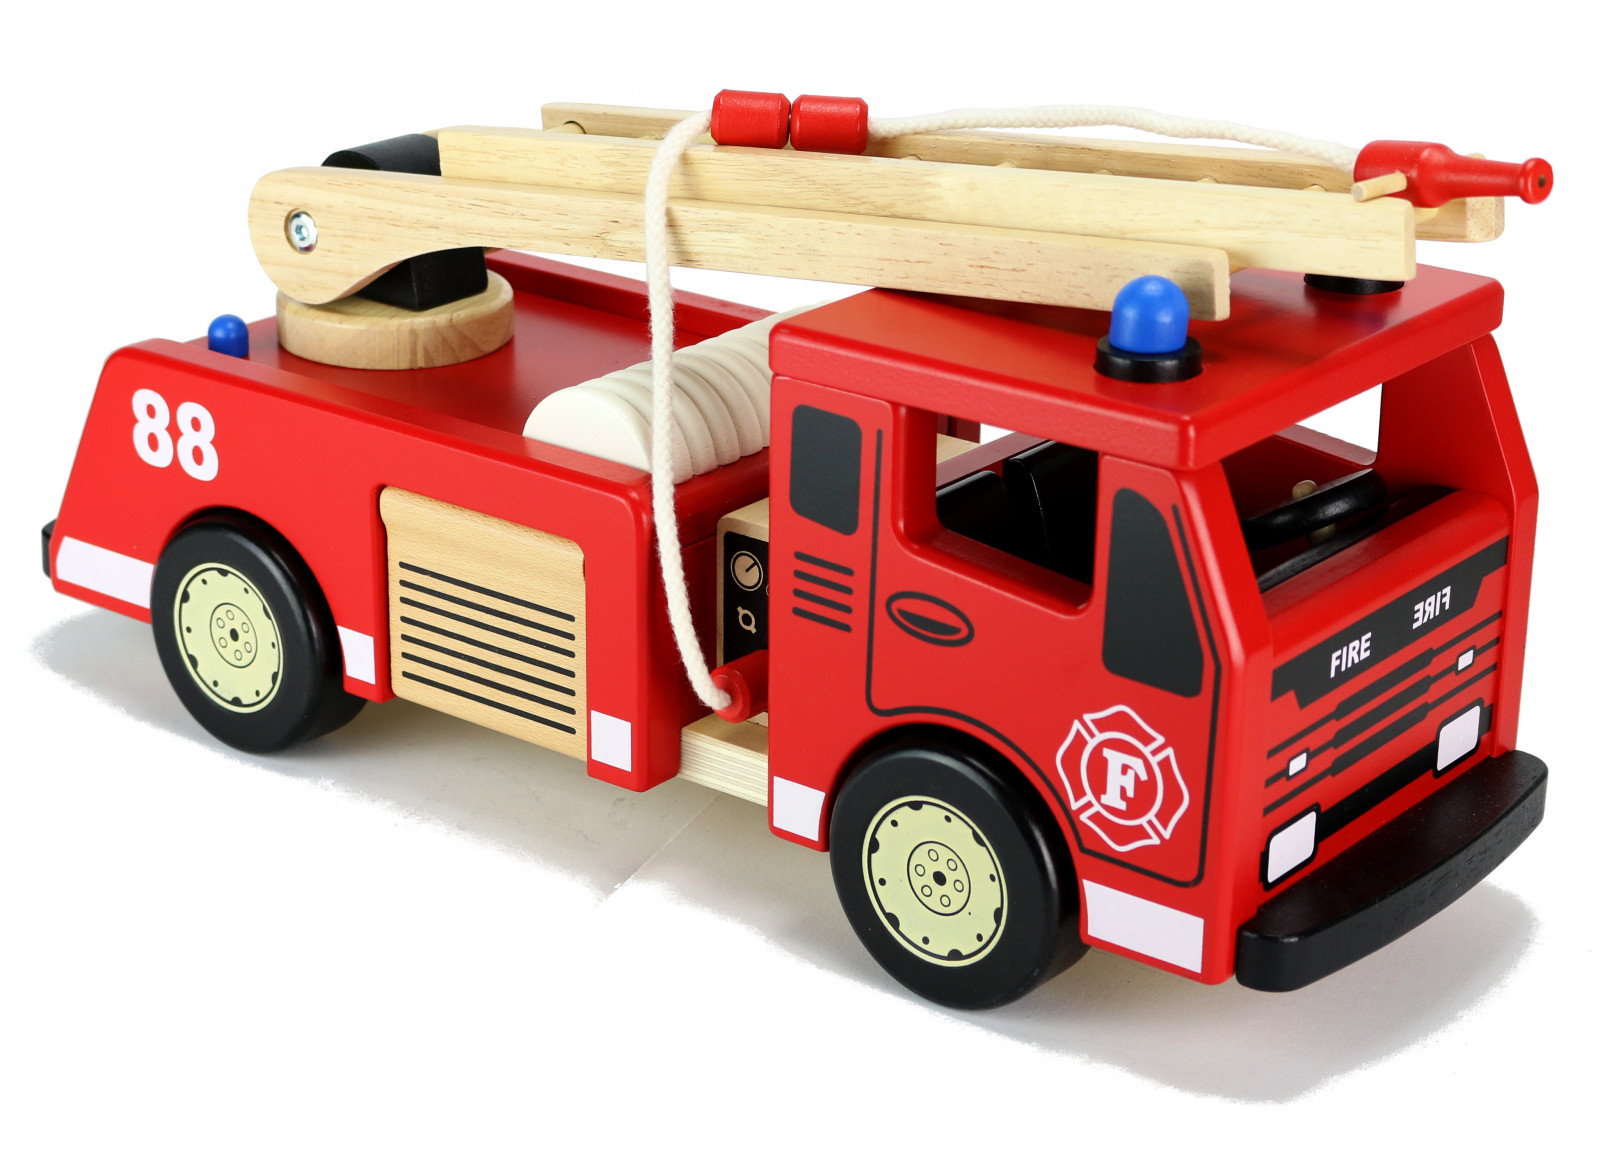 Klein - aber alles drin: Das Feuerwehrauto für den schnellen